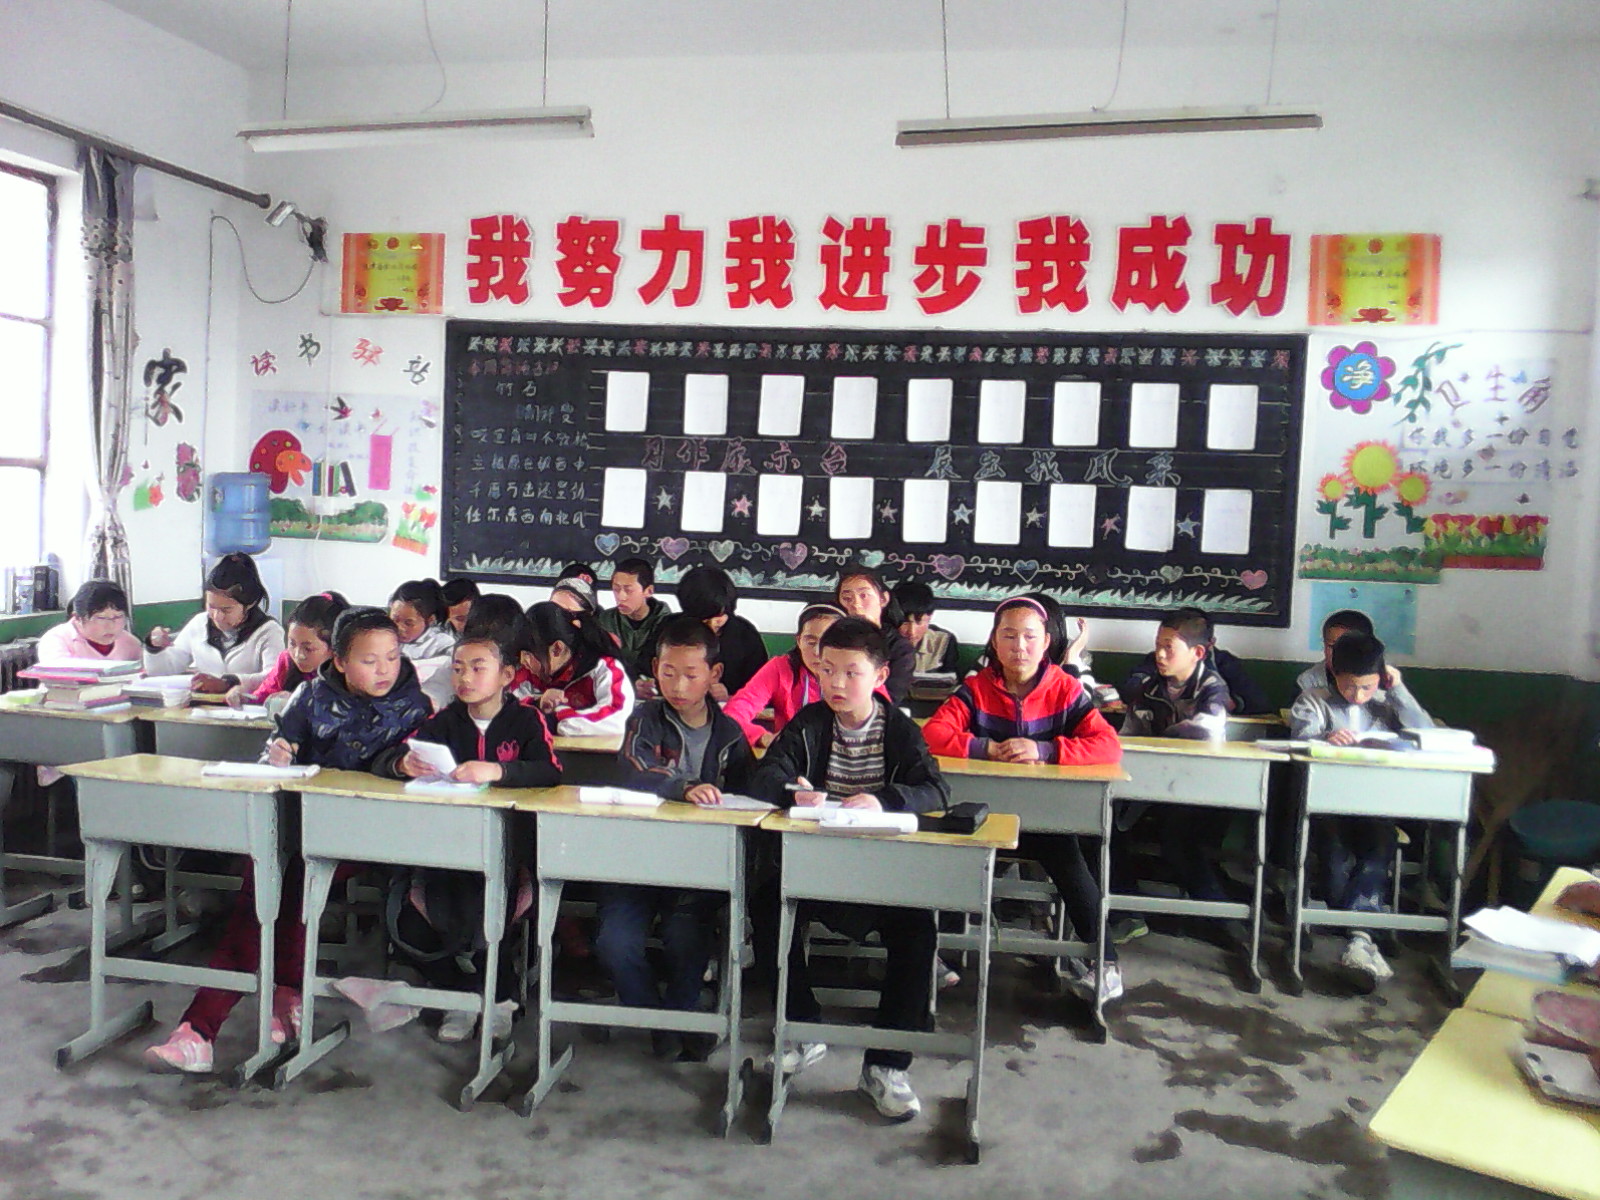 洛川县槐柏镇中心小学六年级汉字听写大会 - 动态上传 - 活动 - 未来网红领巾集结号